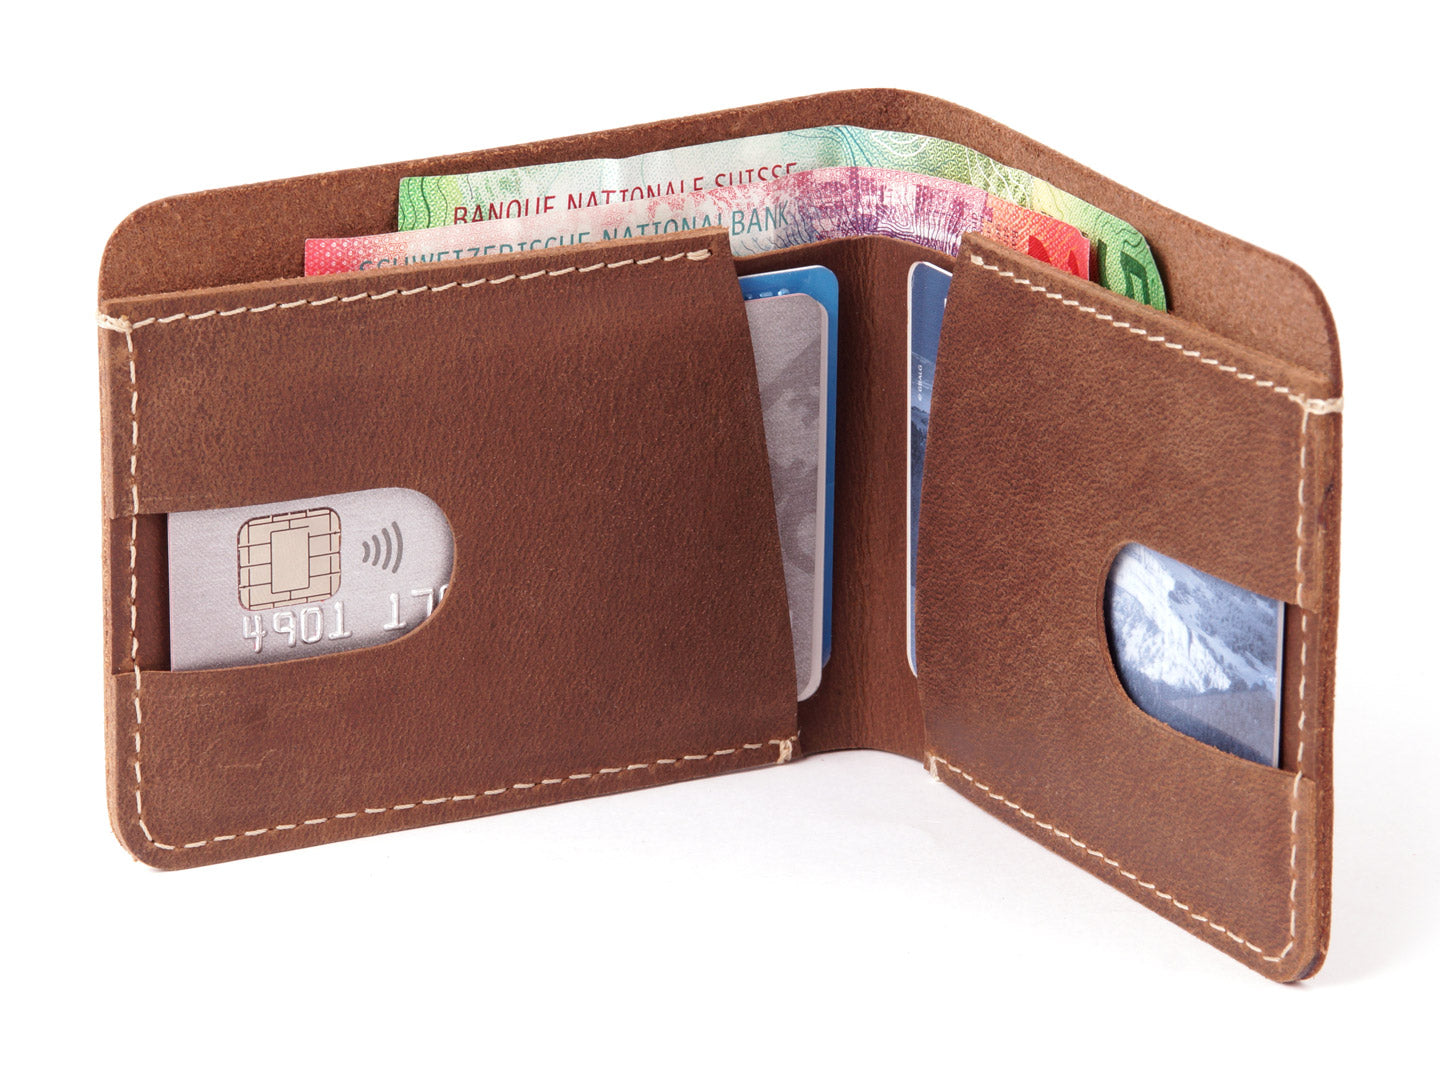 slender wallet inside